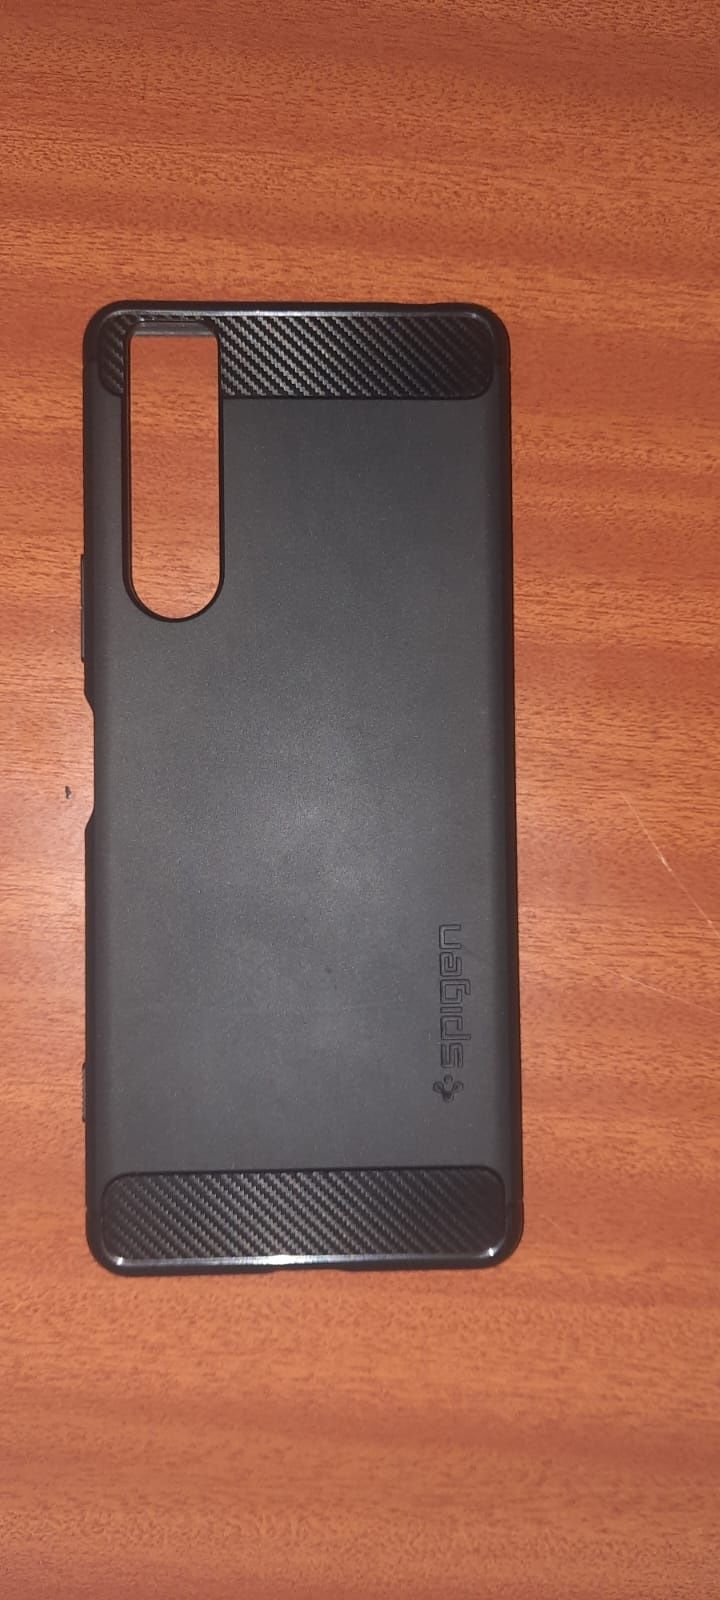 Sony Xperia 1 Mark II 256GB